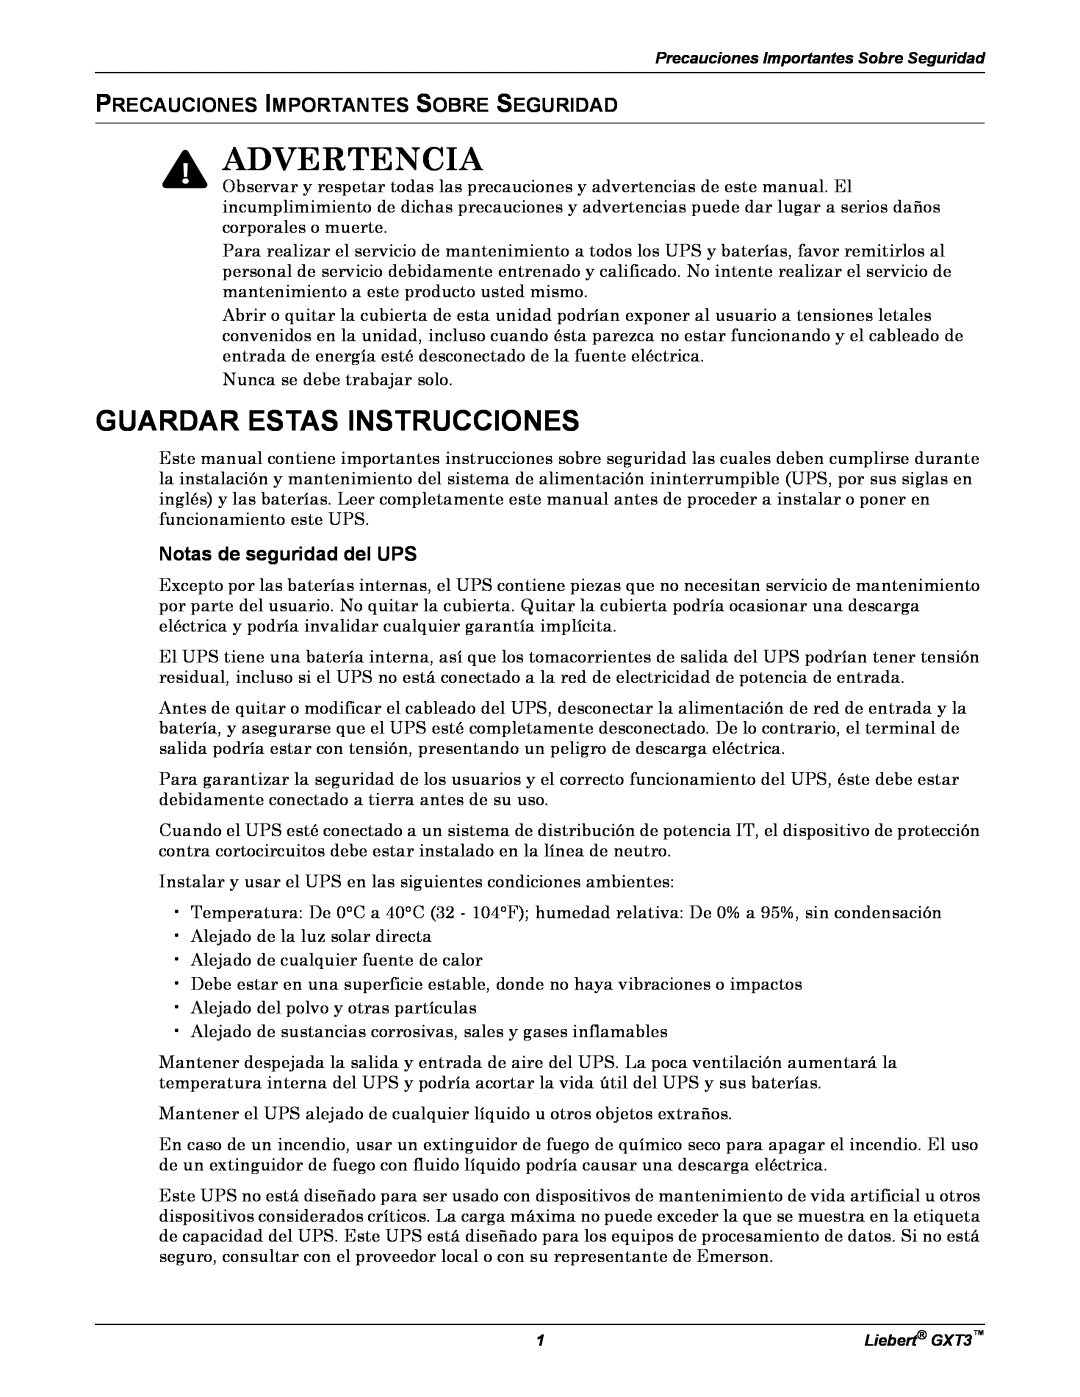 Emerson GXT3 manual Advertencia, Precauciones Importantes Sobre Seguridad, Notas de seguridad del UPS 